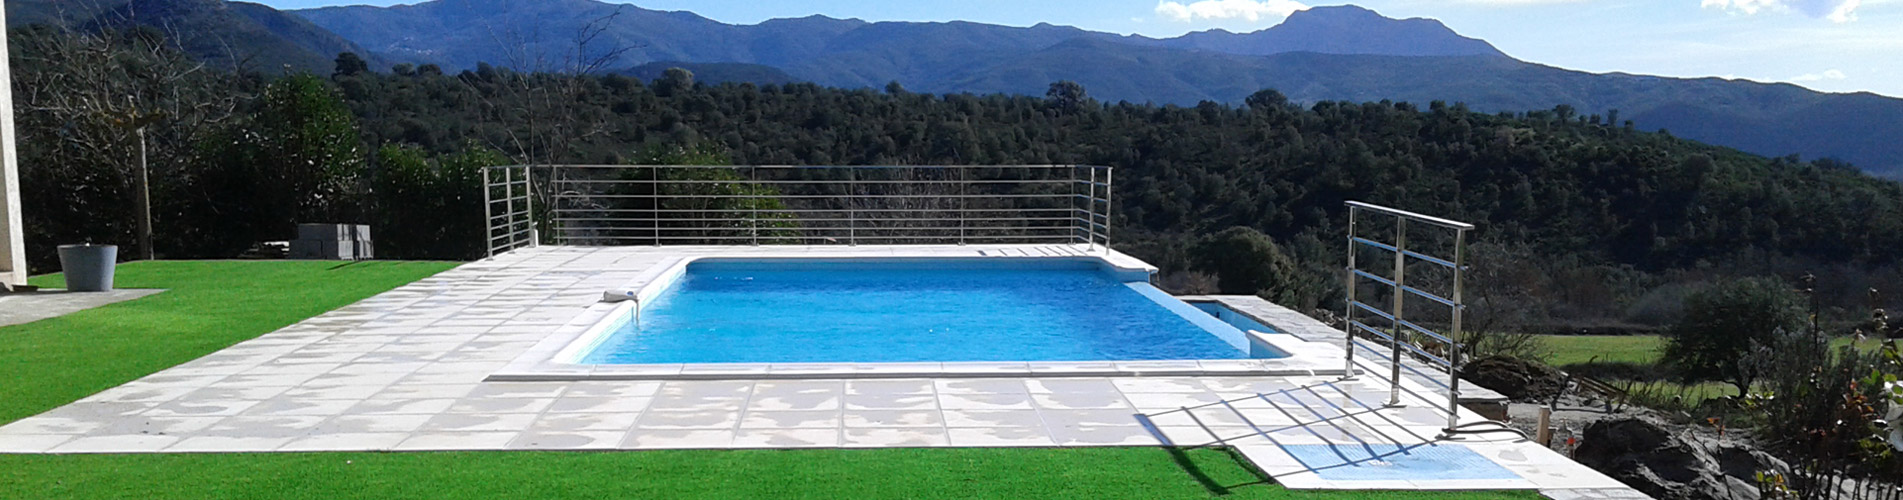 Corse Piscines Concept : Constructeur de piscines en béton armé